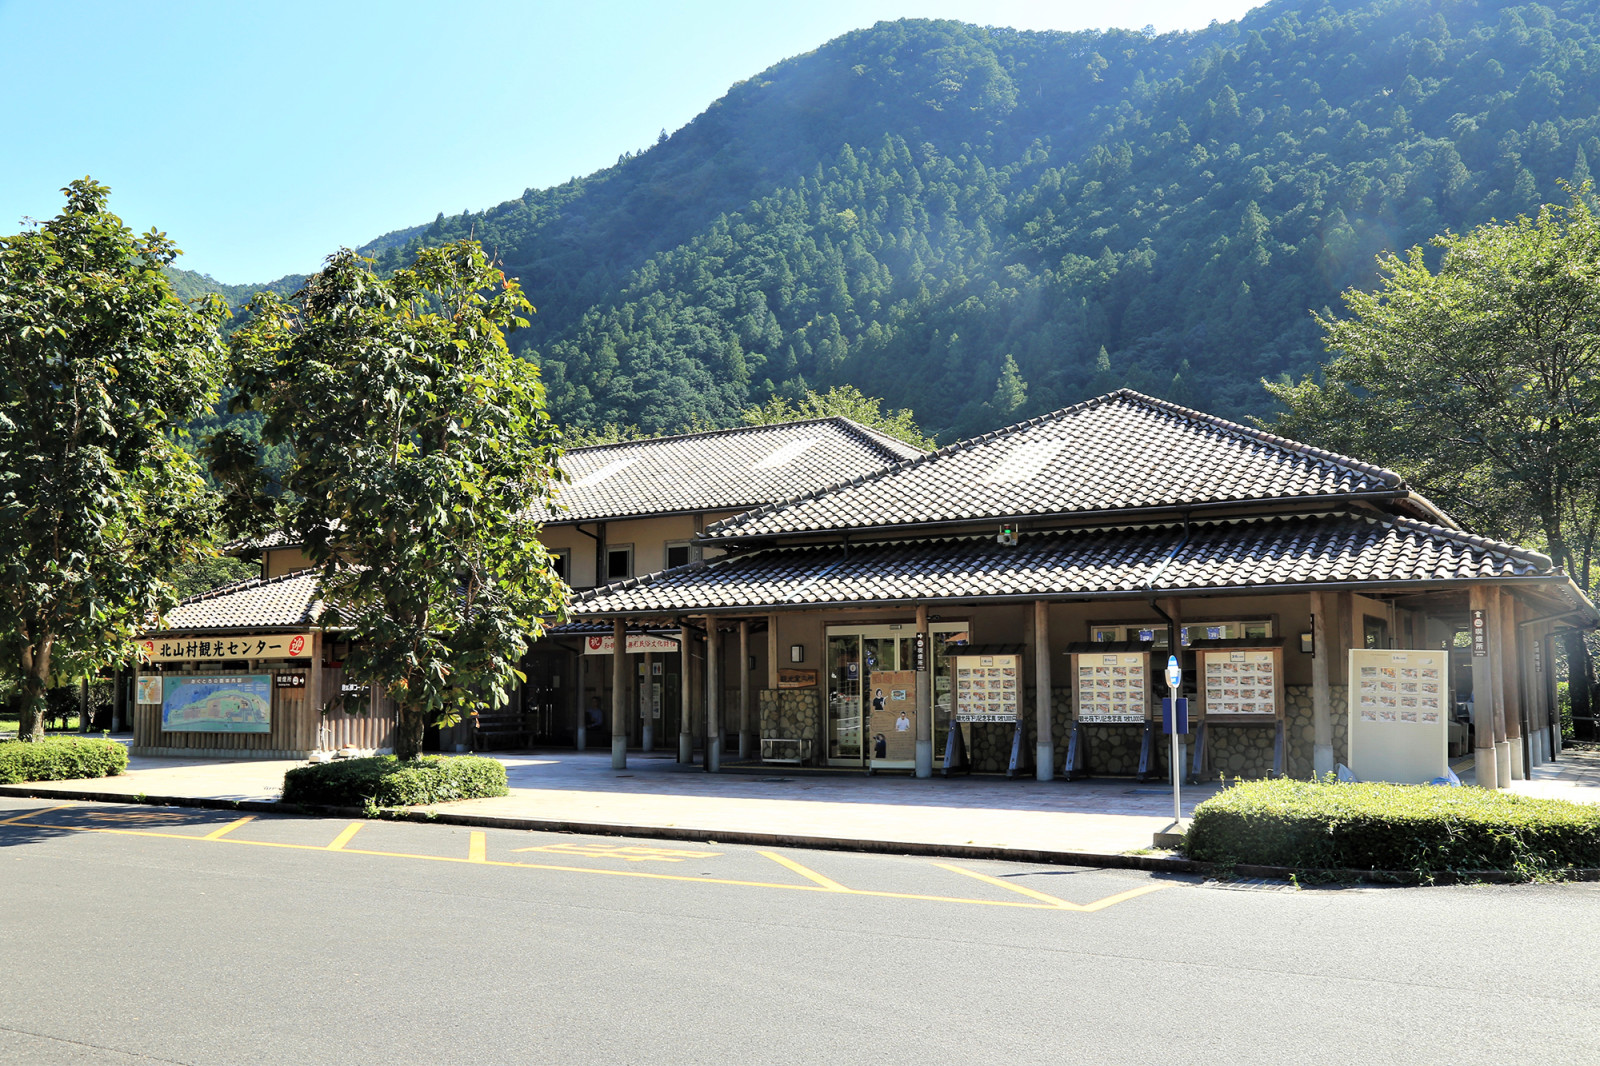 わかやま観光 おくとろ公園 和歌山県公式観光サイト